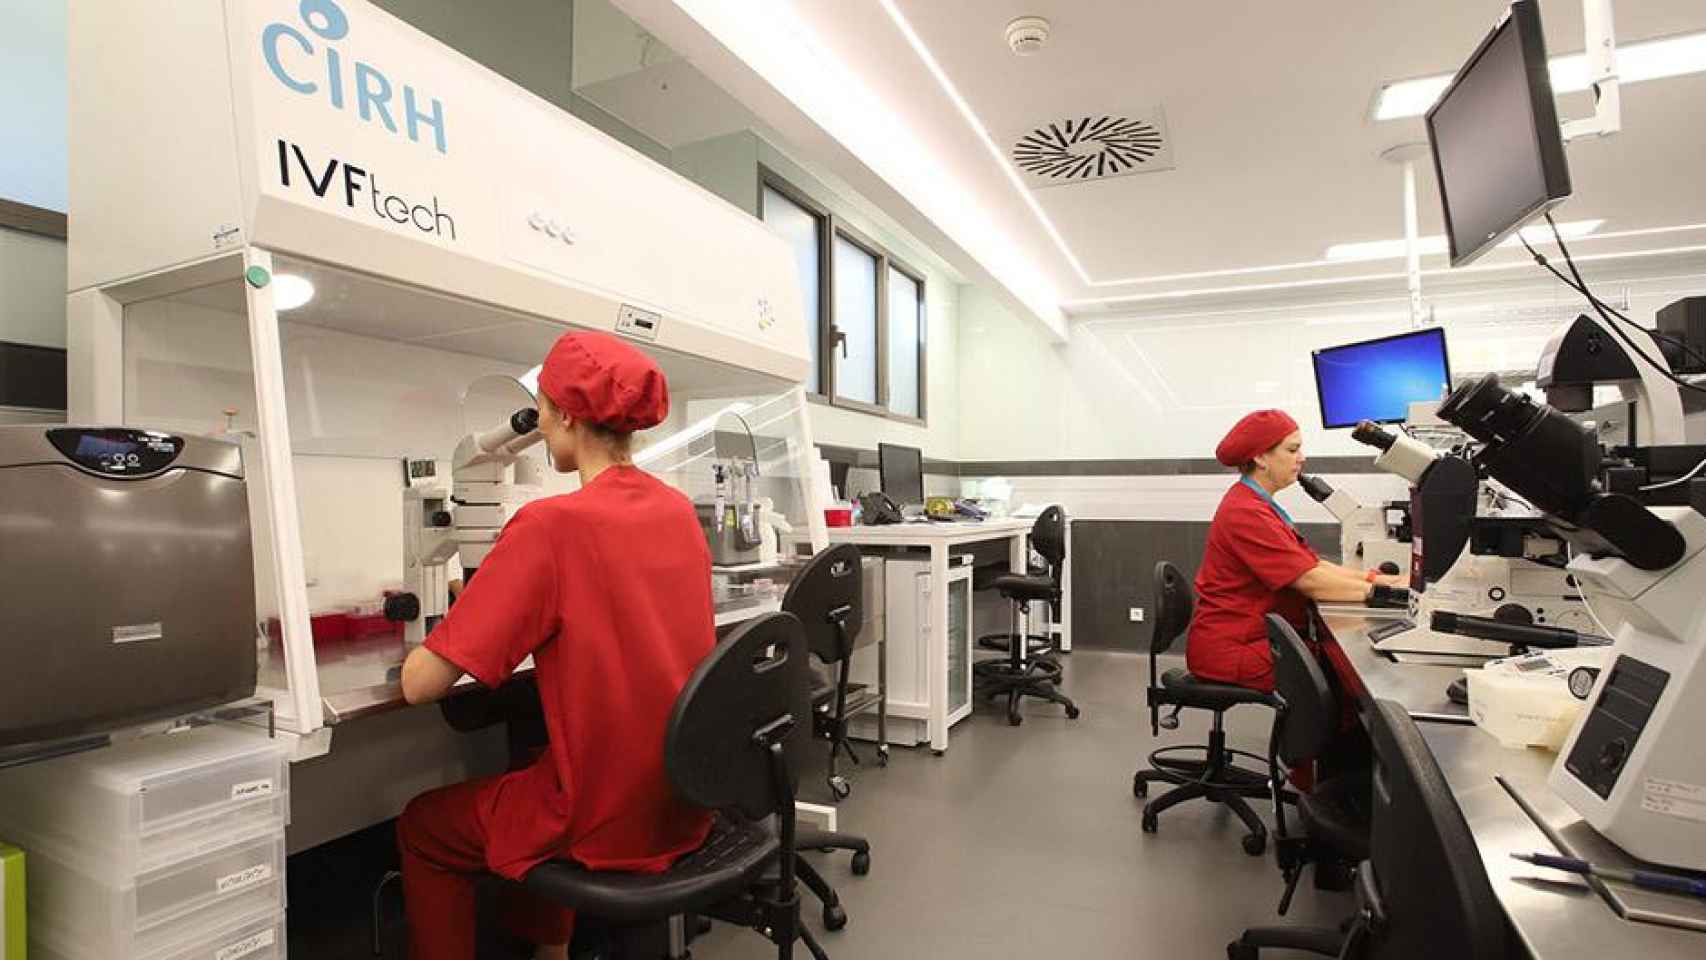 Investigadores del laboratorio CIRH Eugin han testado el chip que selecciona los espermatozoides con menor daño en su ADN / CG